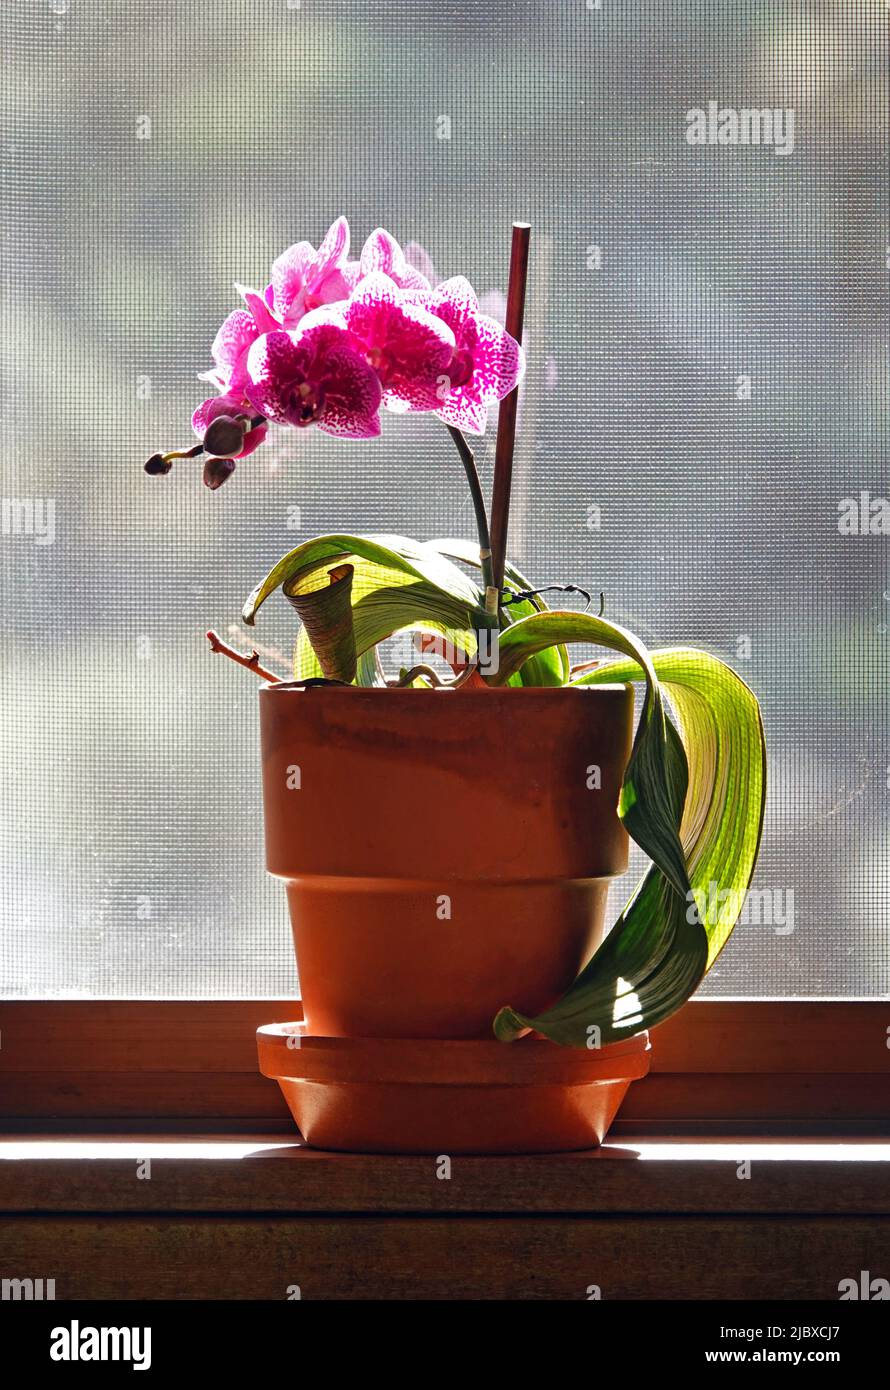 Une orchidée rose poussant dans un pot d'argile, assis sur un seuil de fenêtre. Banque D'Images